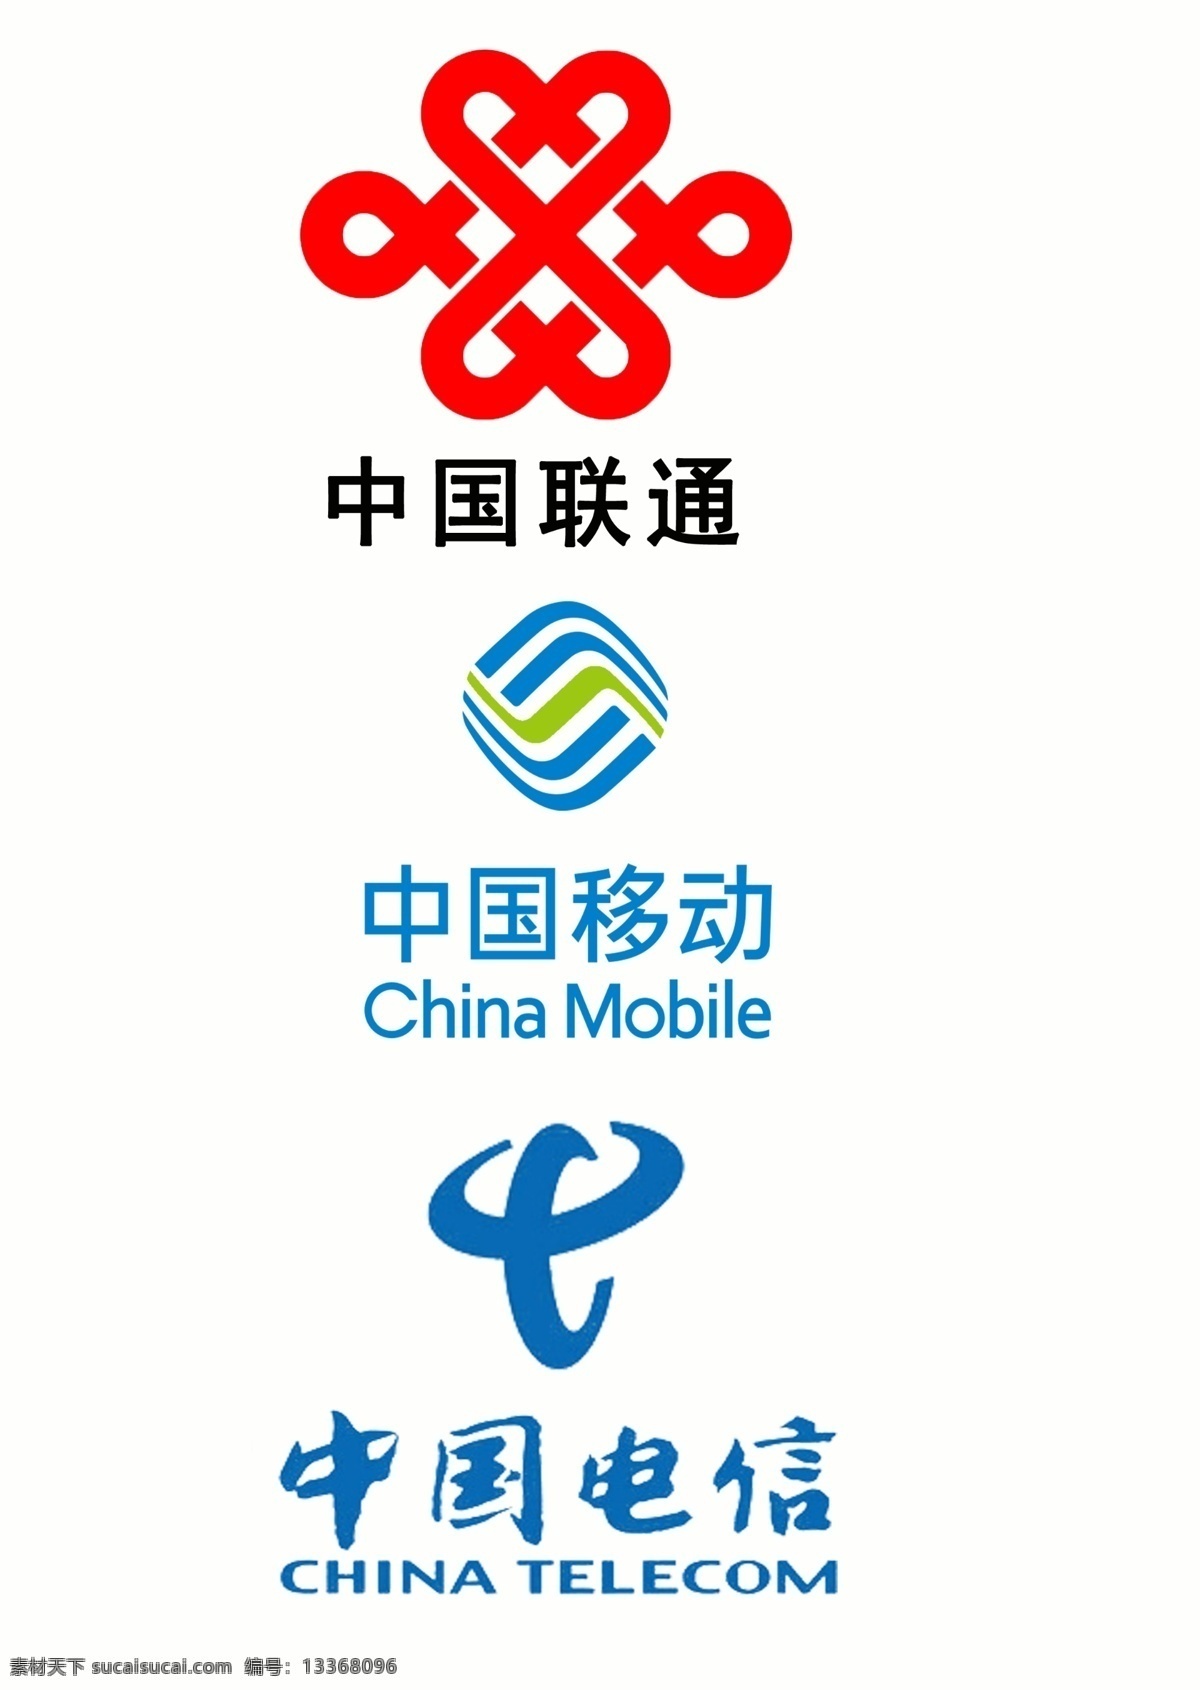 通讯 企业 logo 移动 联通 电信 网络 标志 标志图标